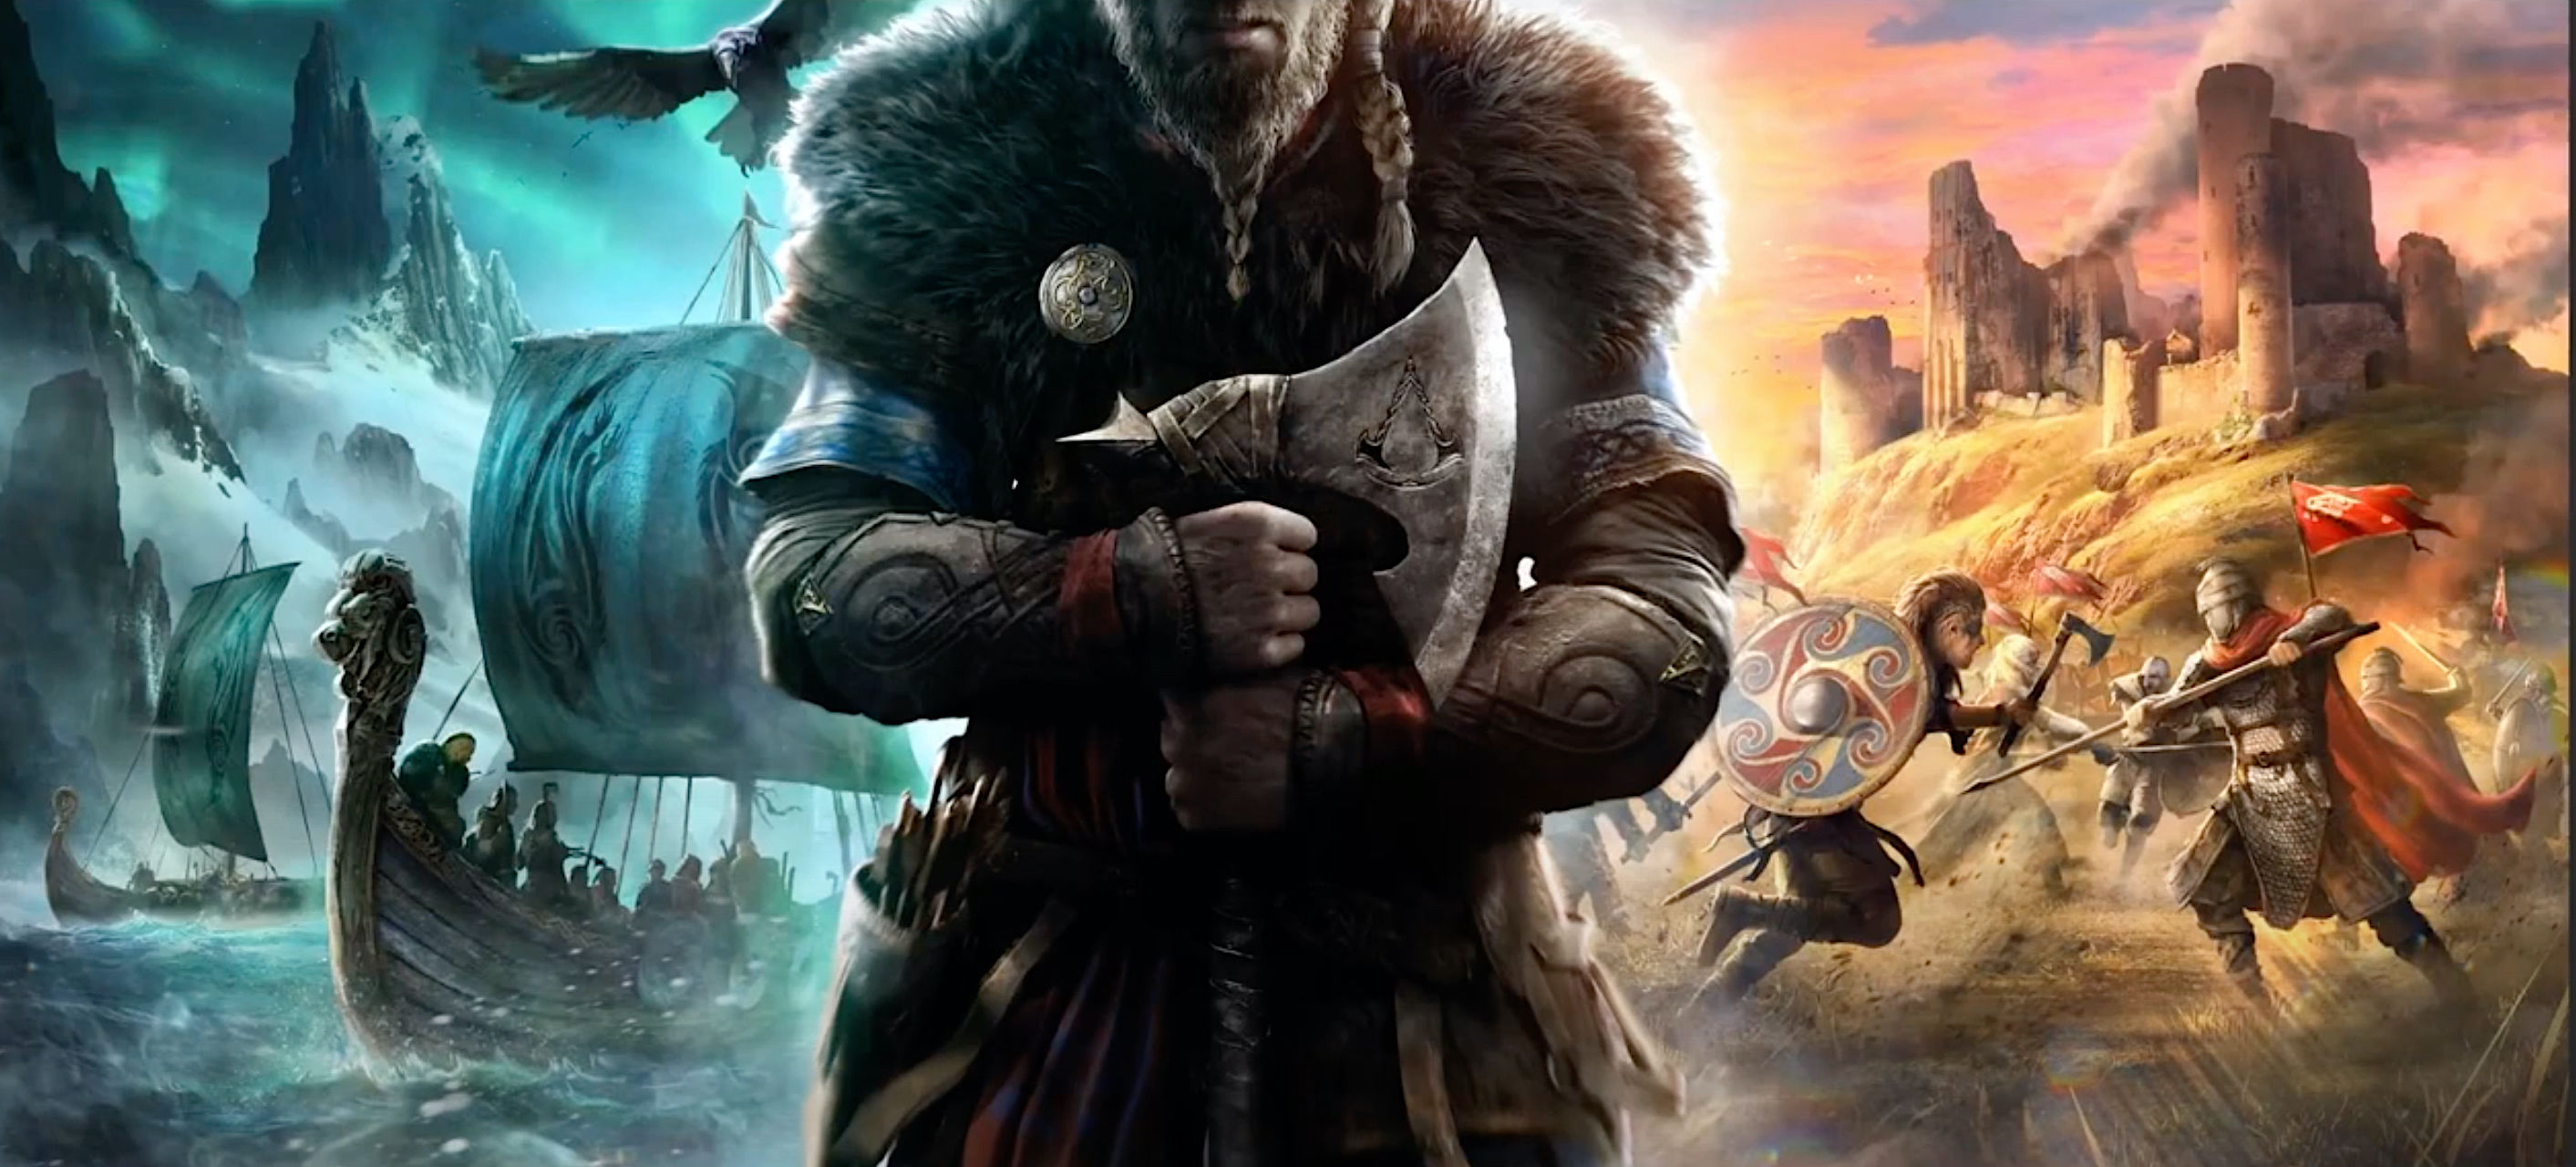 viking assassin creed